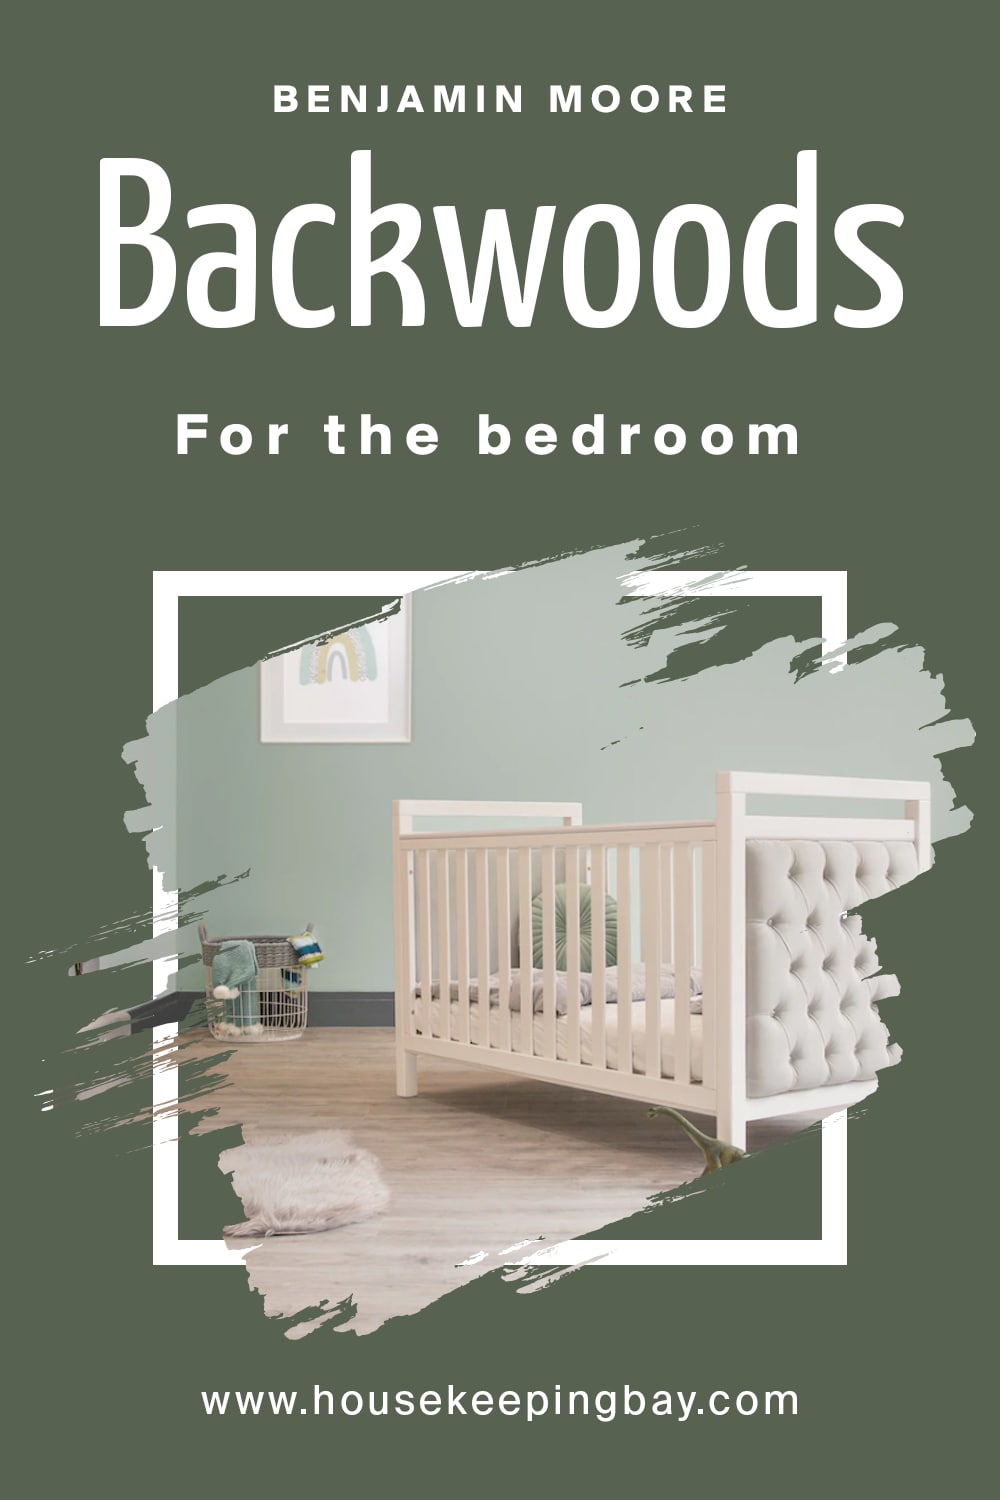 Benjamin Moore. Backwoods for the bedroom